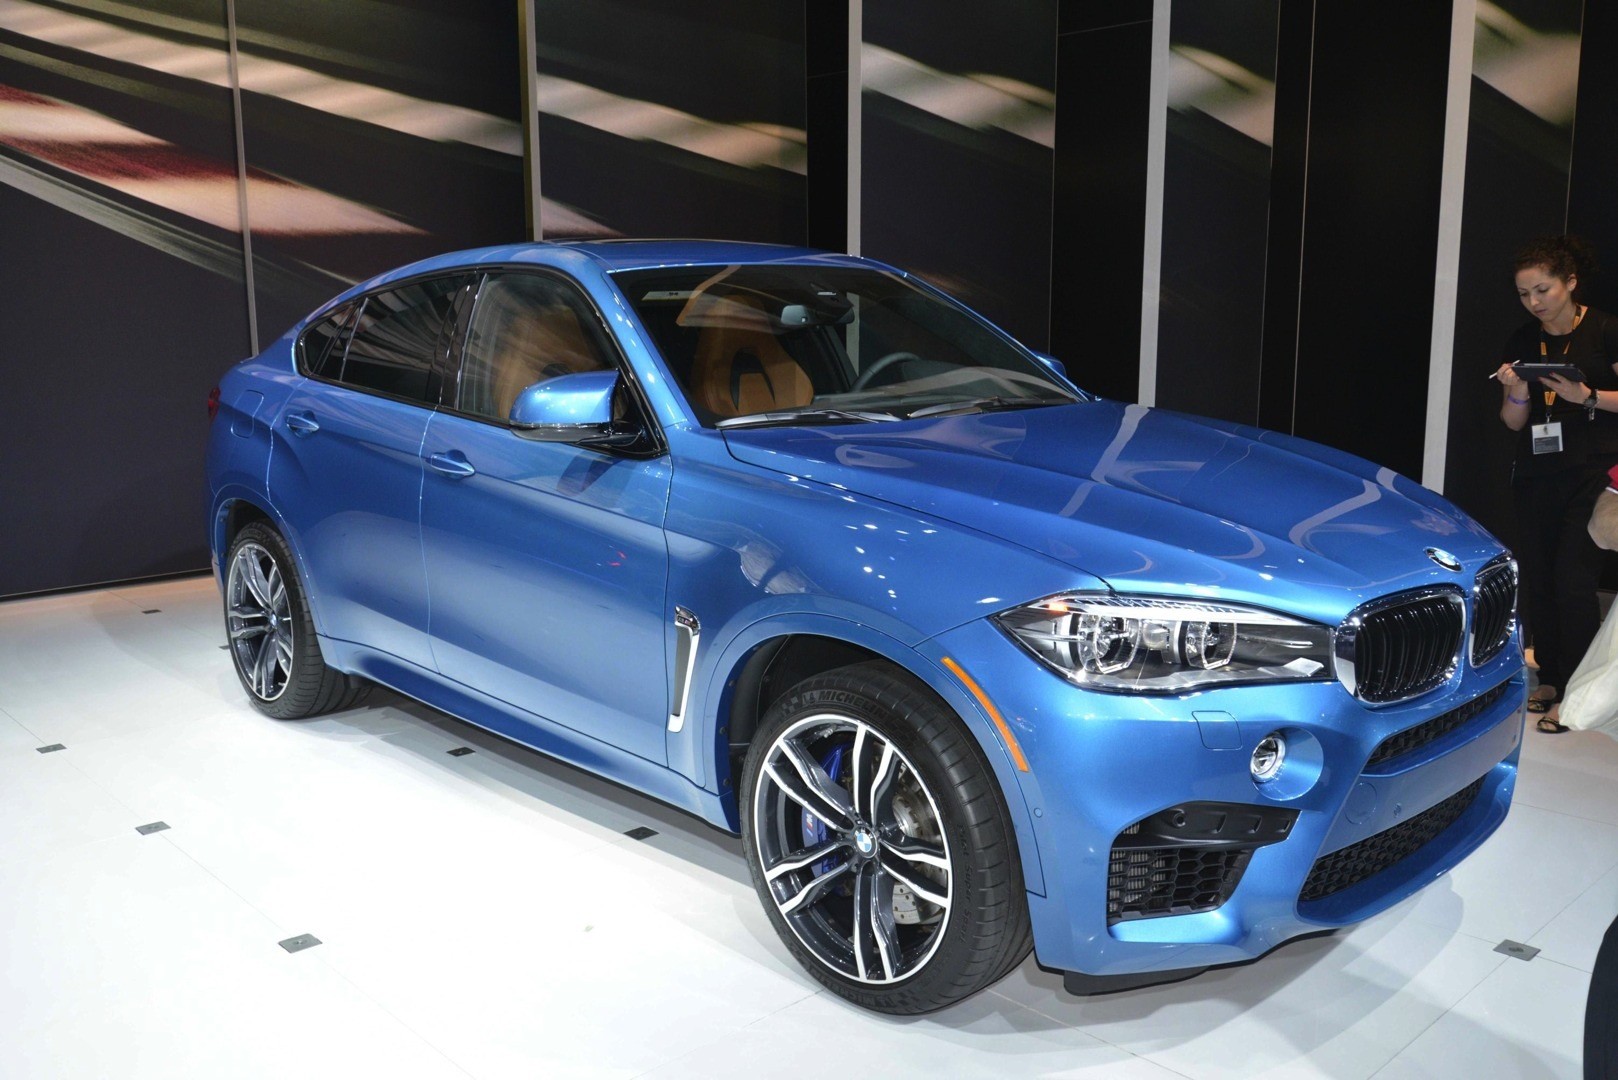 BMW X5 M and X6 M Show Up in LA with New Colors [Live Photos